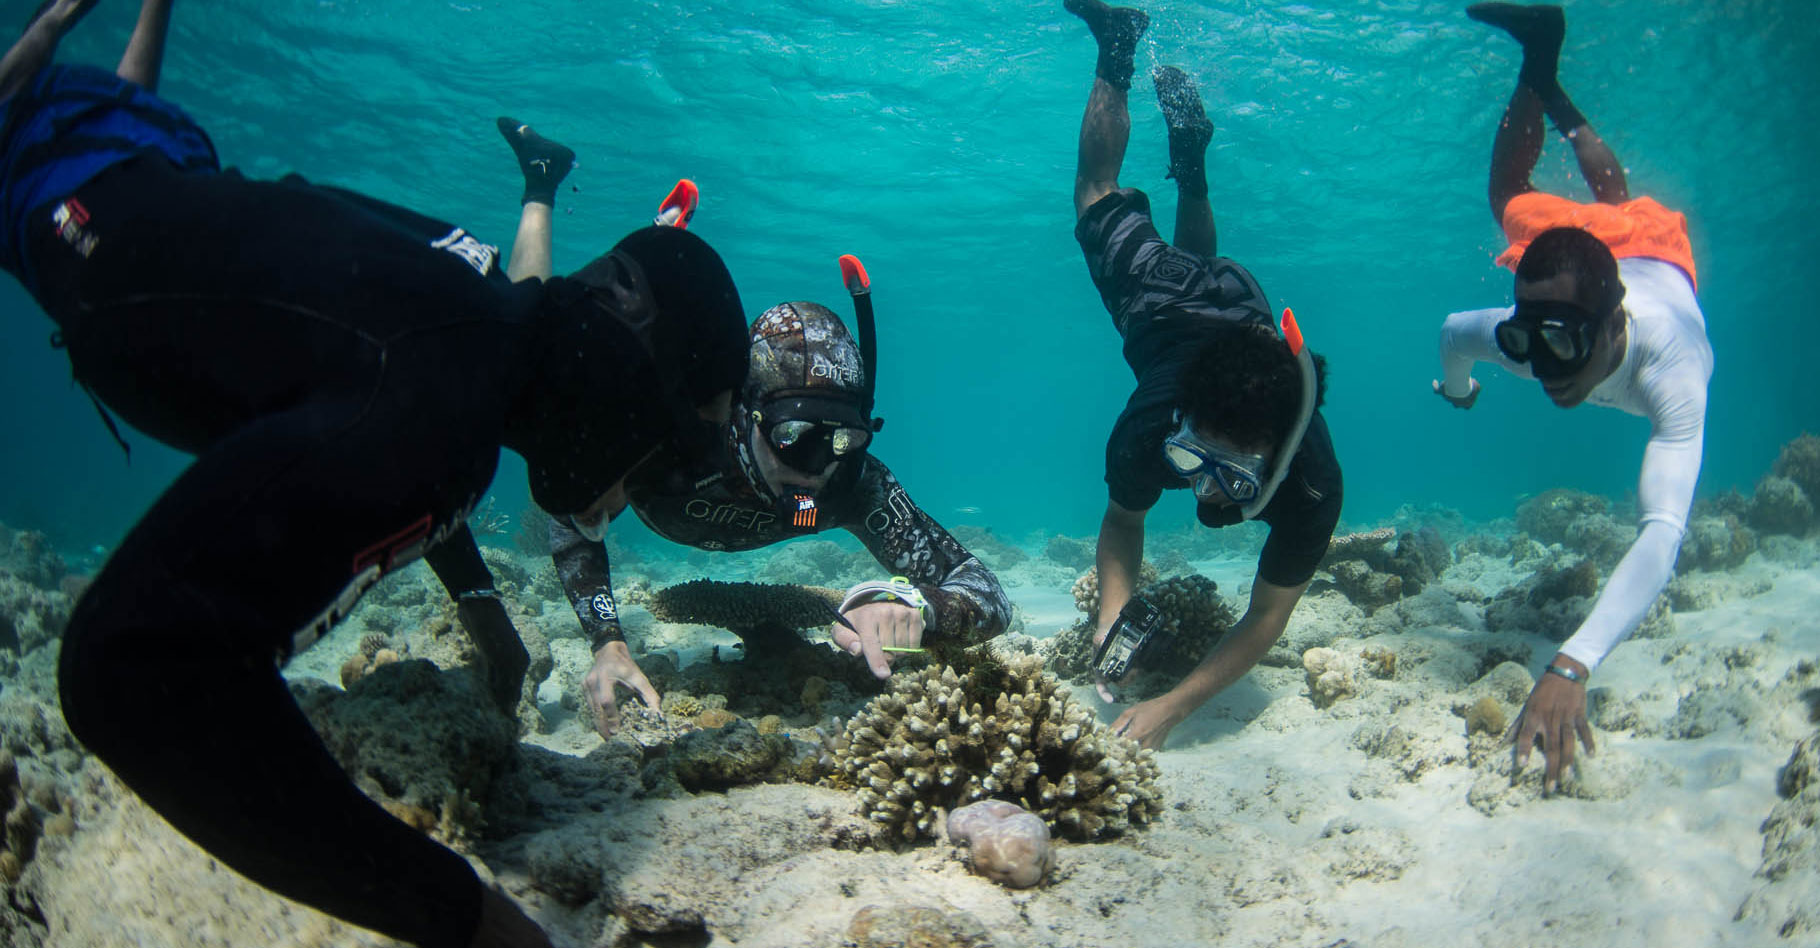 Les coraux doivent faire face au réchauffement climatique. © Coral Guardian, tous droits réservés